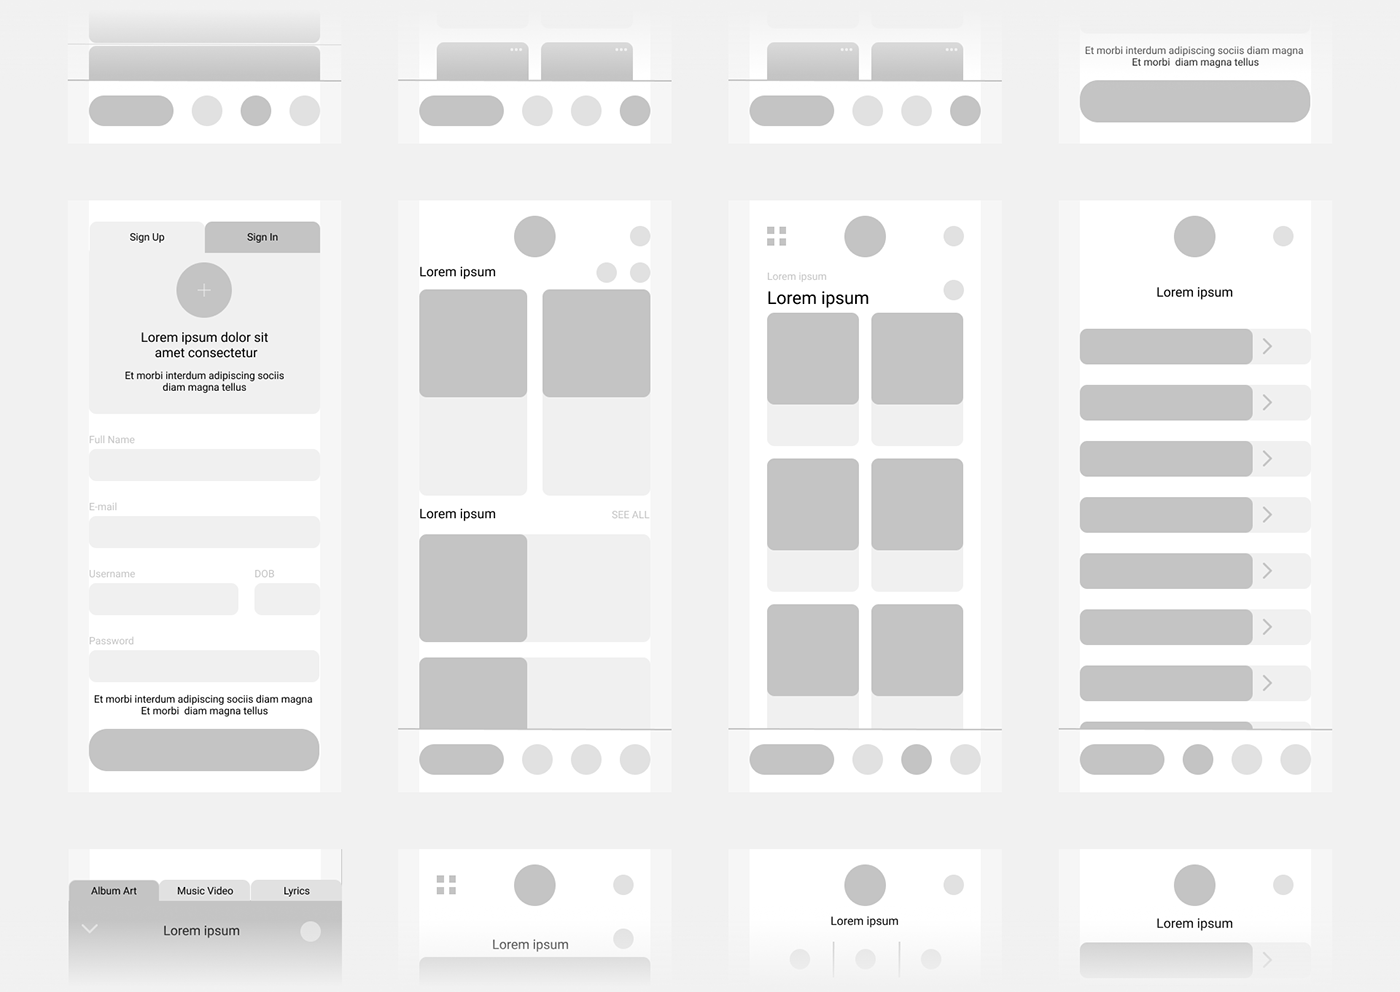 app design design Figma Interface mobile Mobile app ui design UI/UX user experience user interface